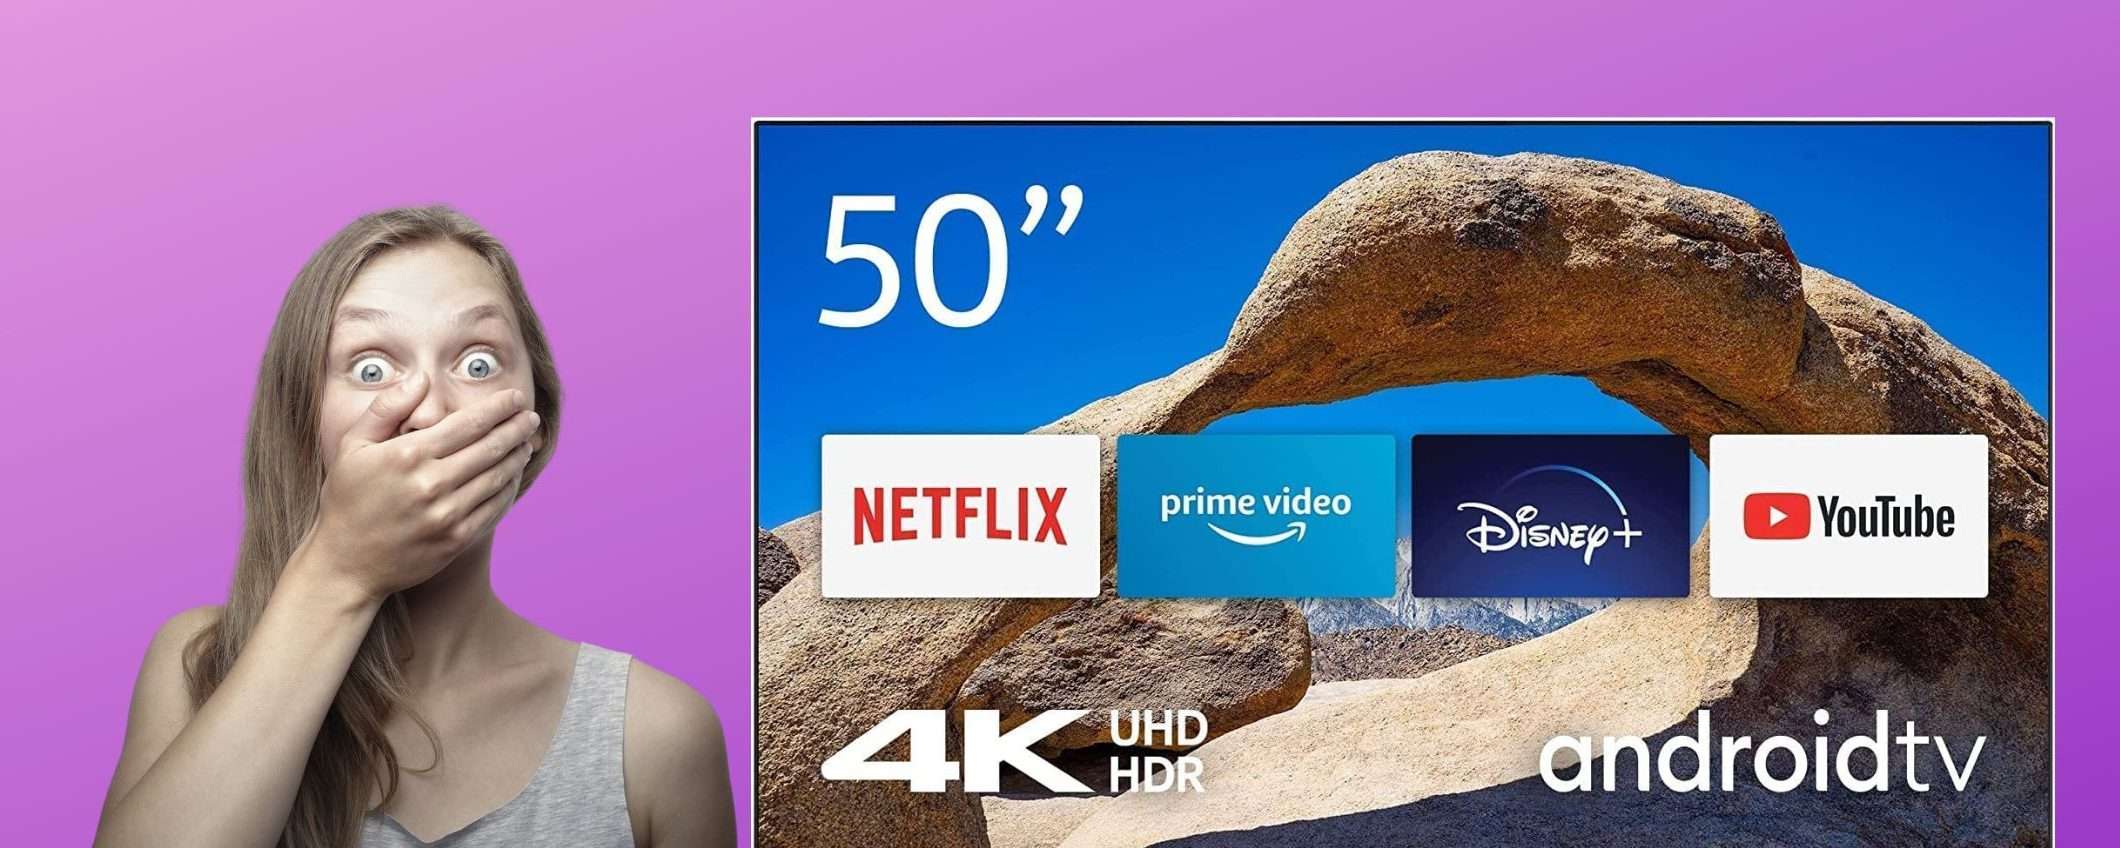 Nokia 4K UHD TV de 50 polegadas: a melhor experiência de visualização a um preço acessível